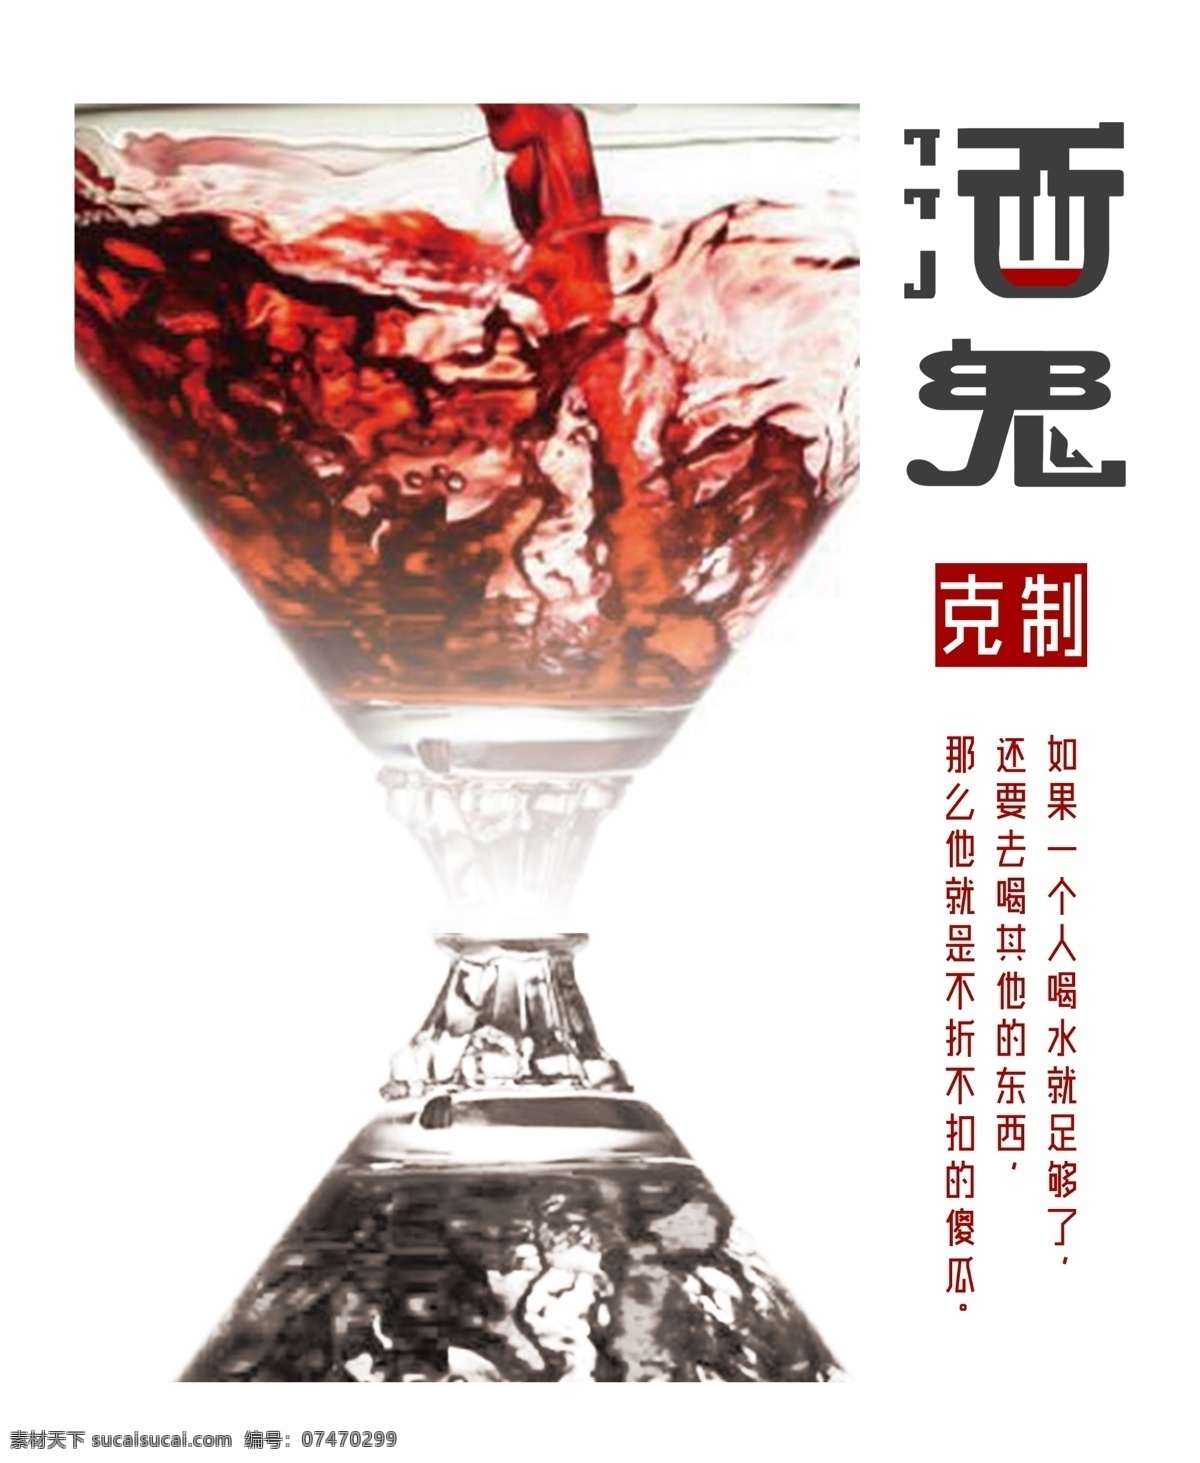 酒鬼 公益 戒酒 字体设计 红酒 酒设计 公益海报设计 沙漏